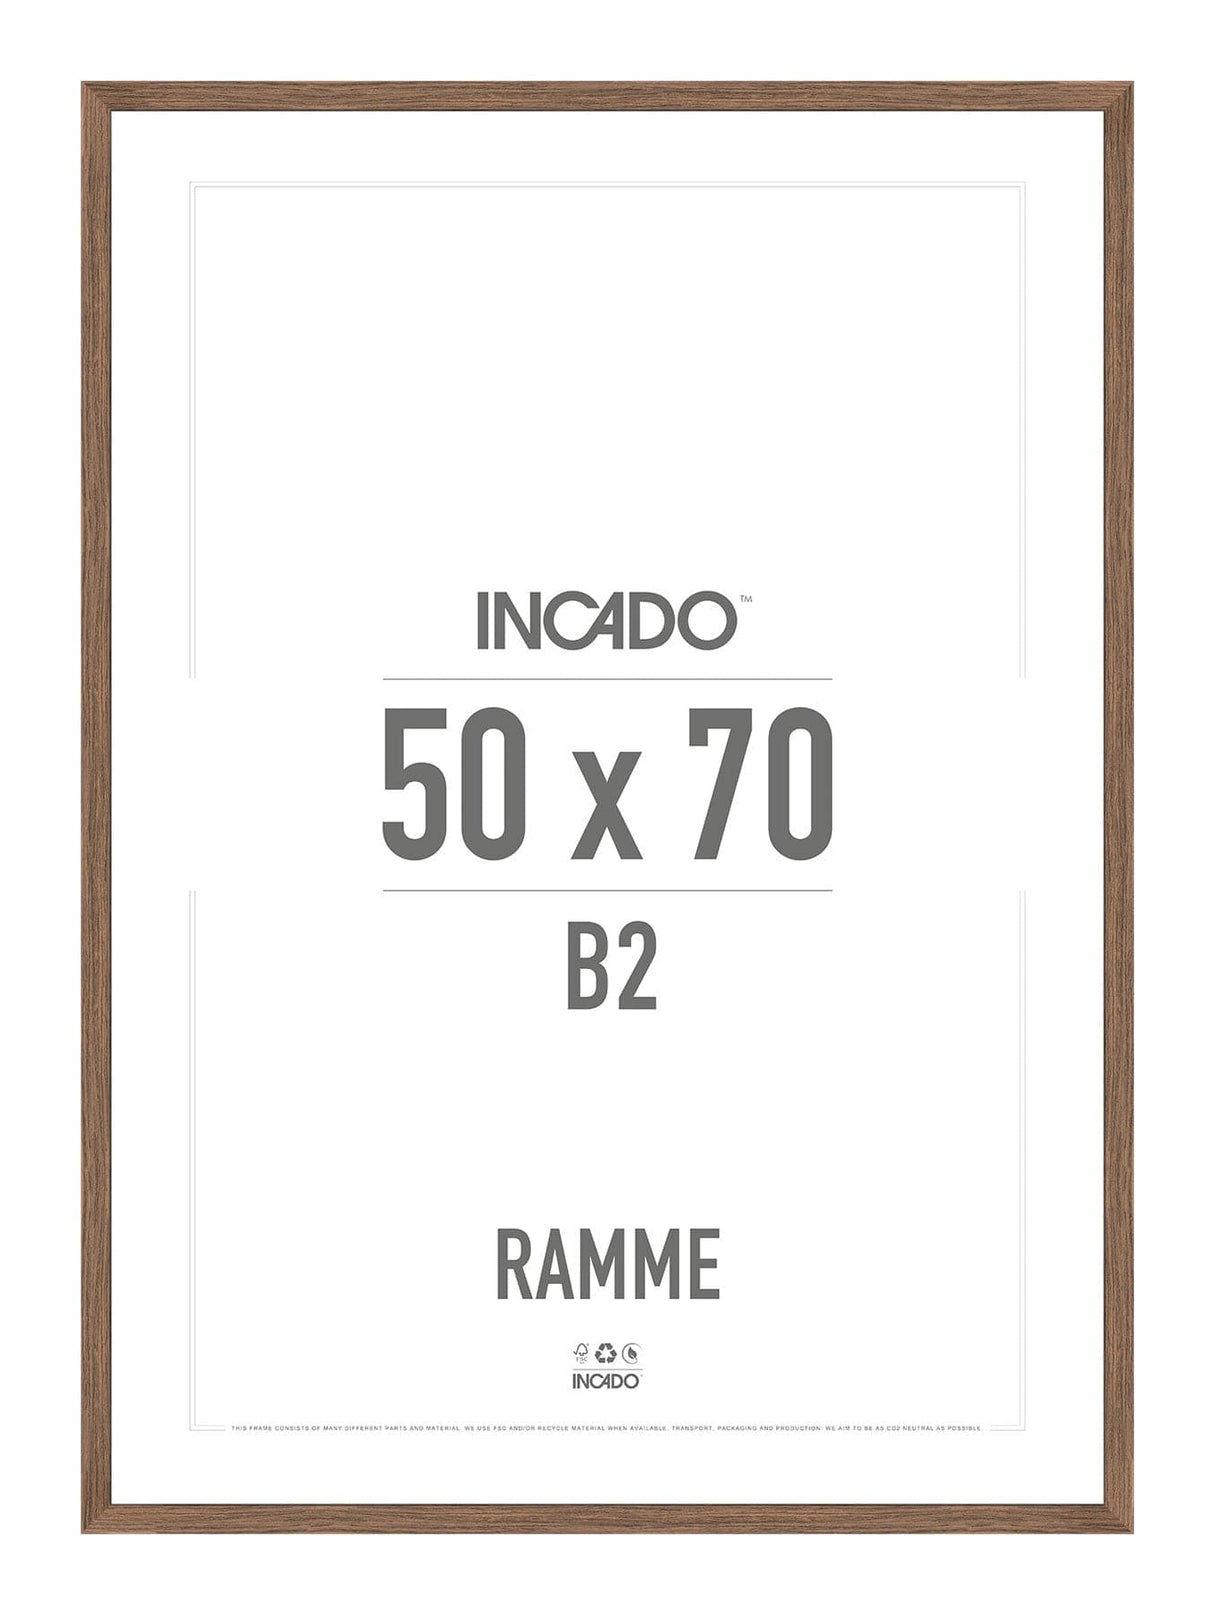 Walnut / Valnød Ramme - Incado NordicLine - 50 x 70 cm 50 x 70  cm Ramme